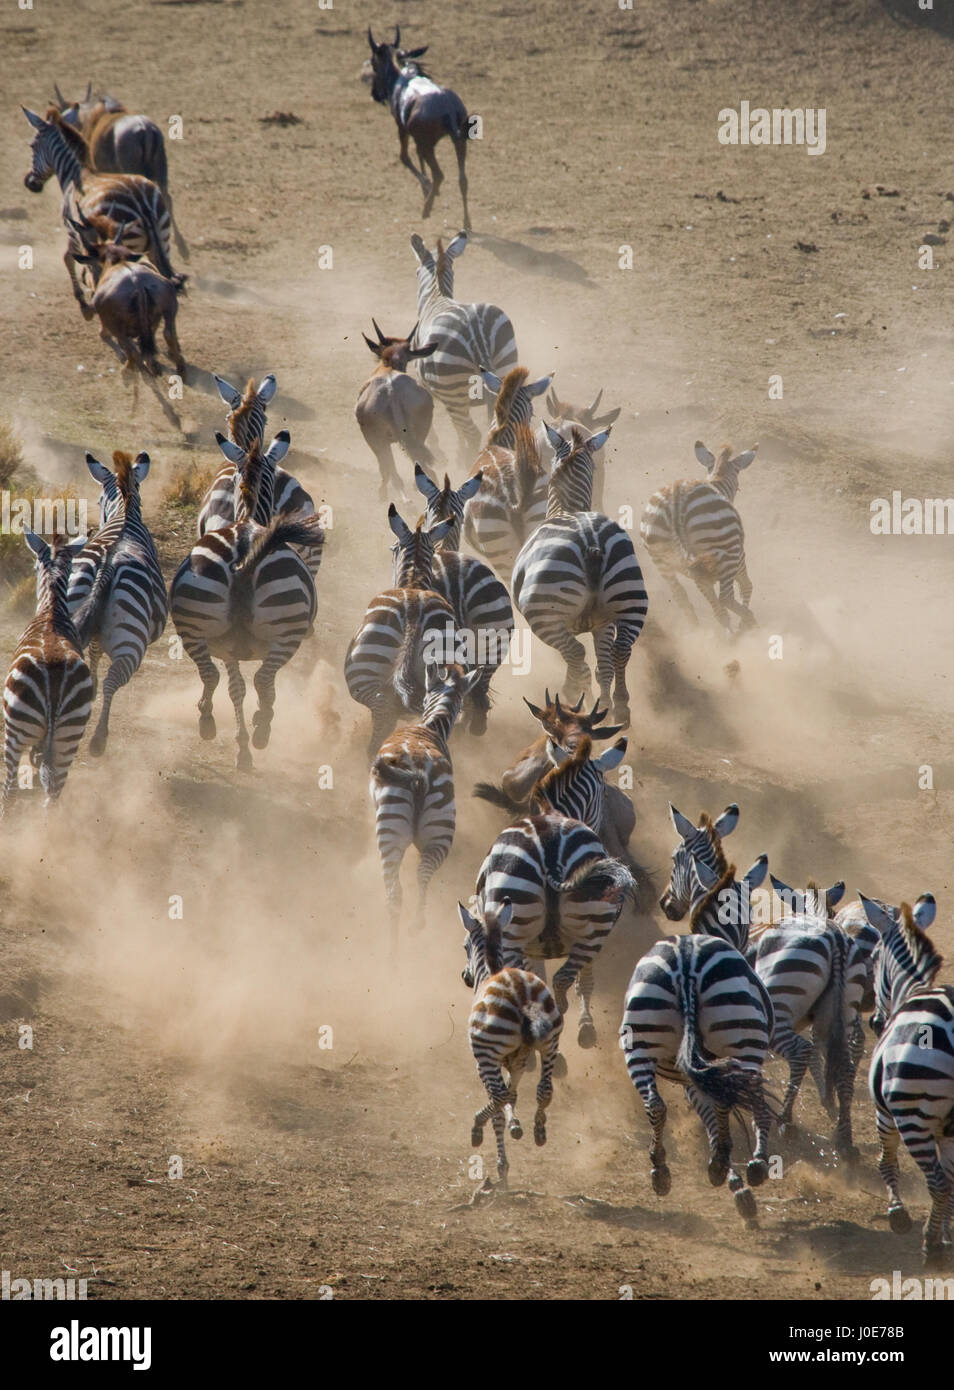 Eine Gruppe von Zebras, die im Staub laufen. Kenia. Tansania. Nationalpark. Serengeti. Maasai Mara. Stockfoto